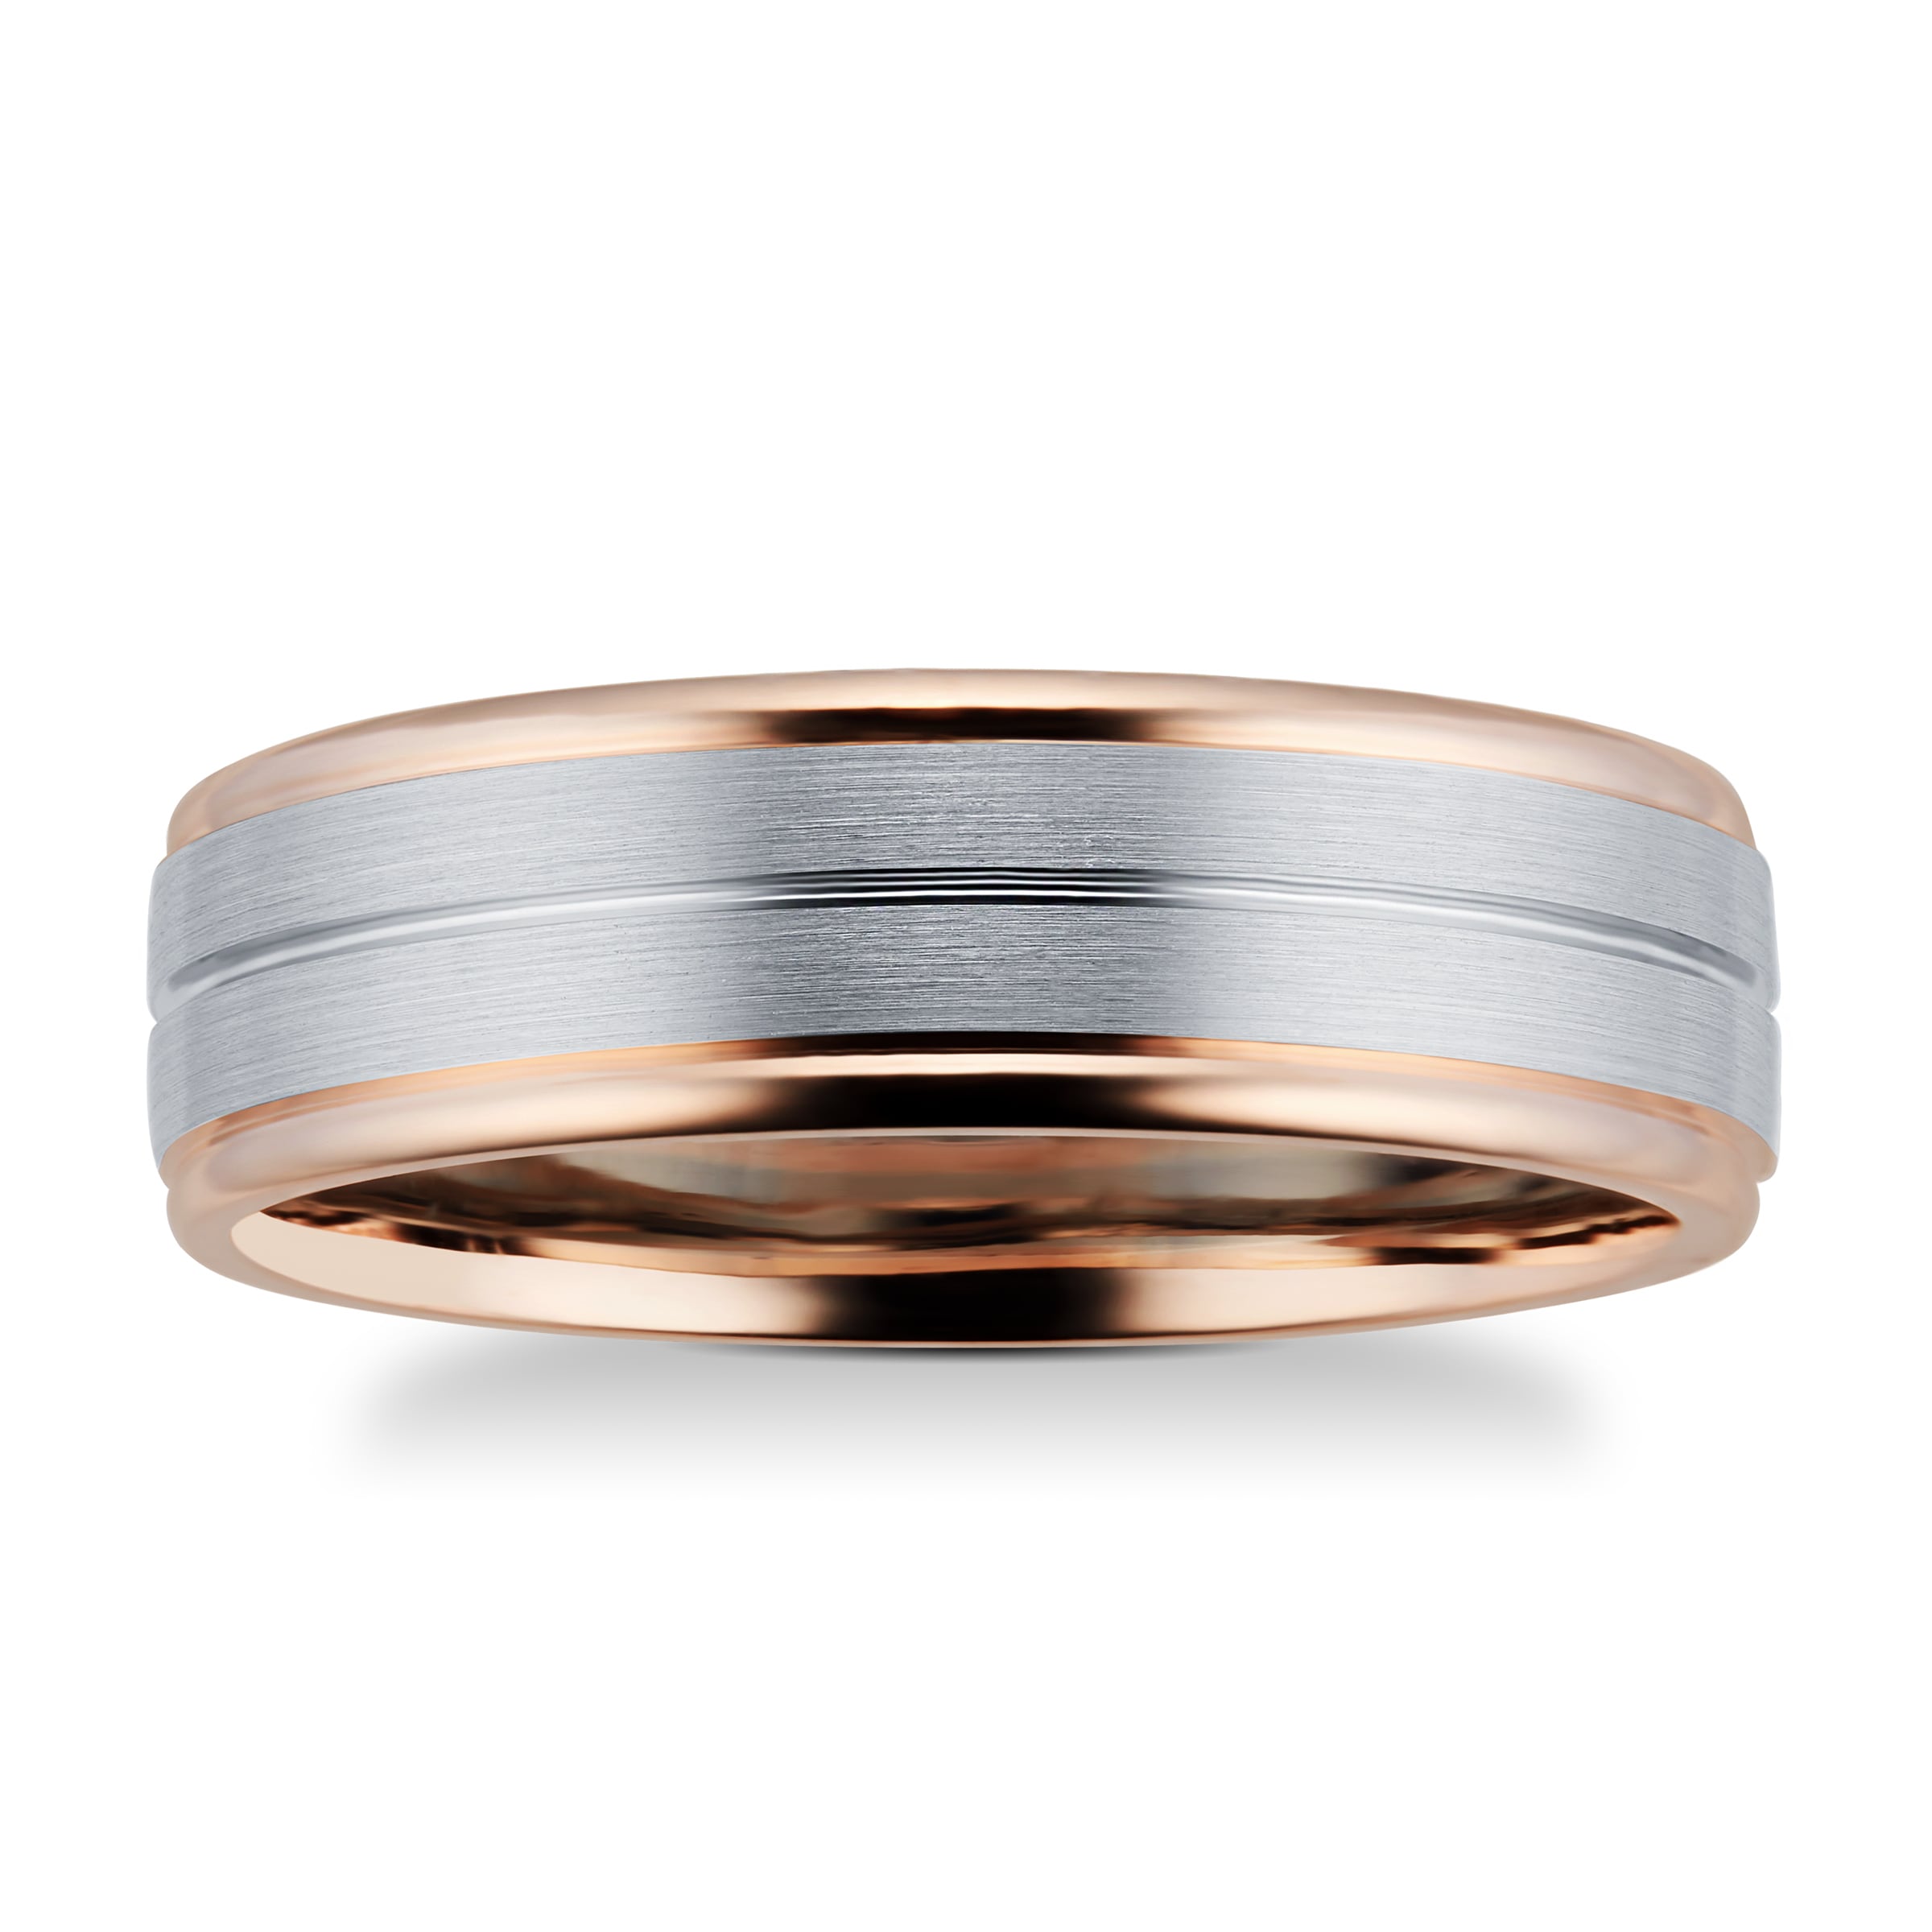 9ct Rose Gold & Palladium Wedding Ring - Ring Size Q